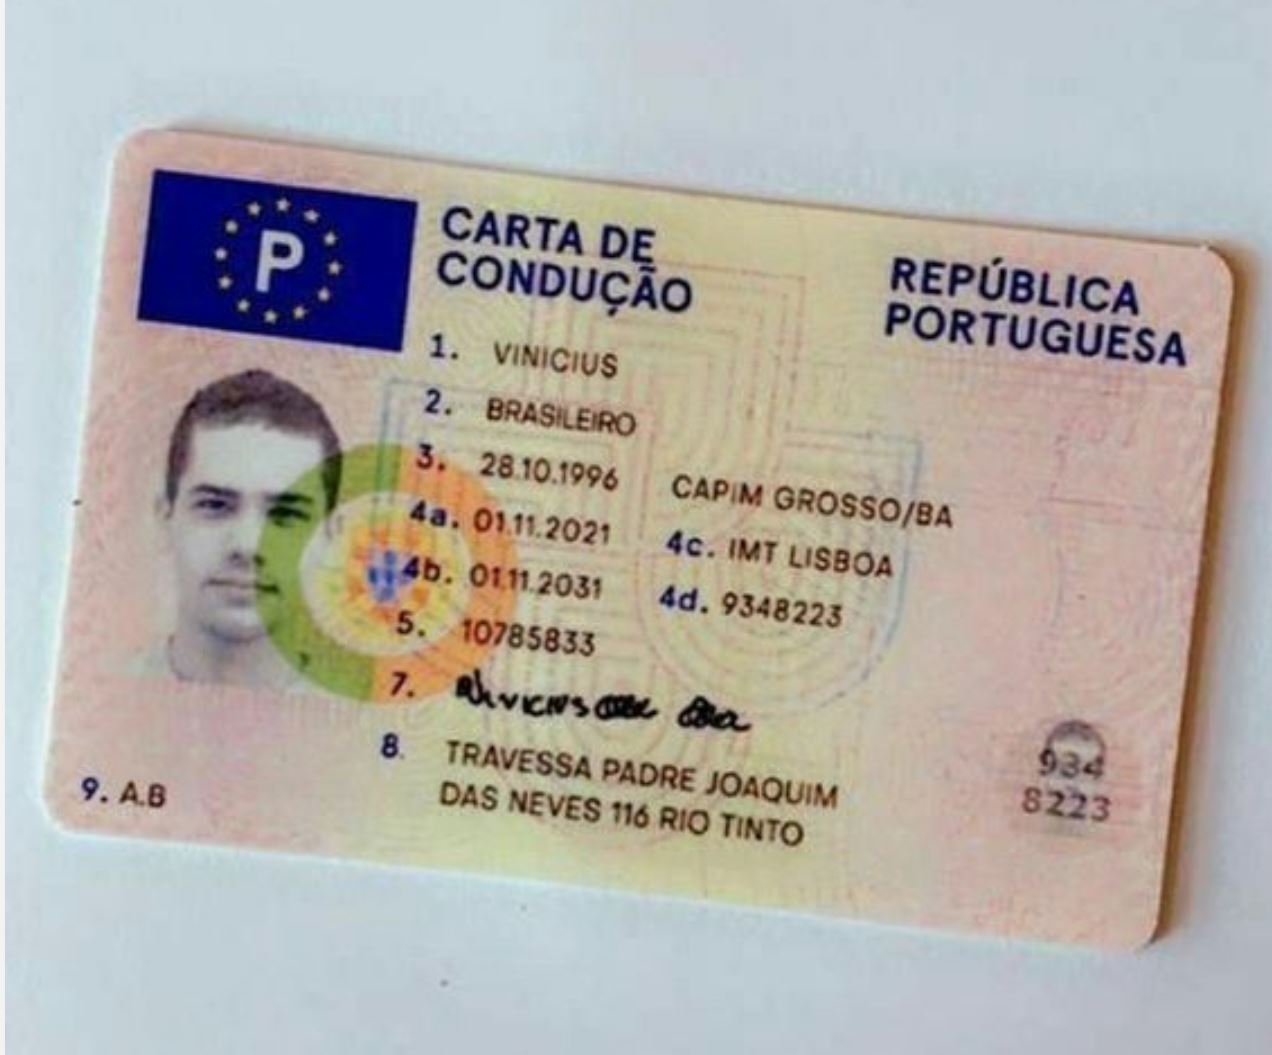 Kaufen Sie einen portugiesischen Führerschein